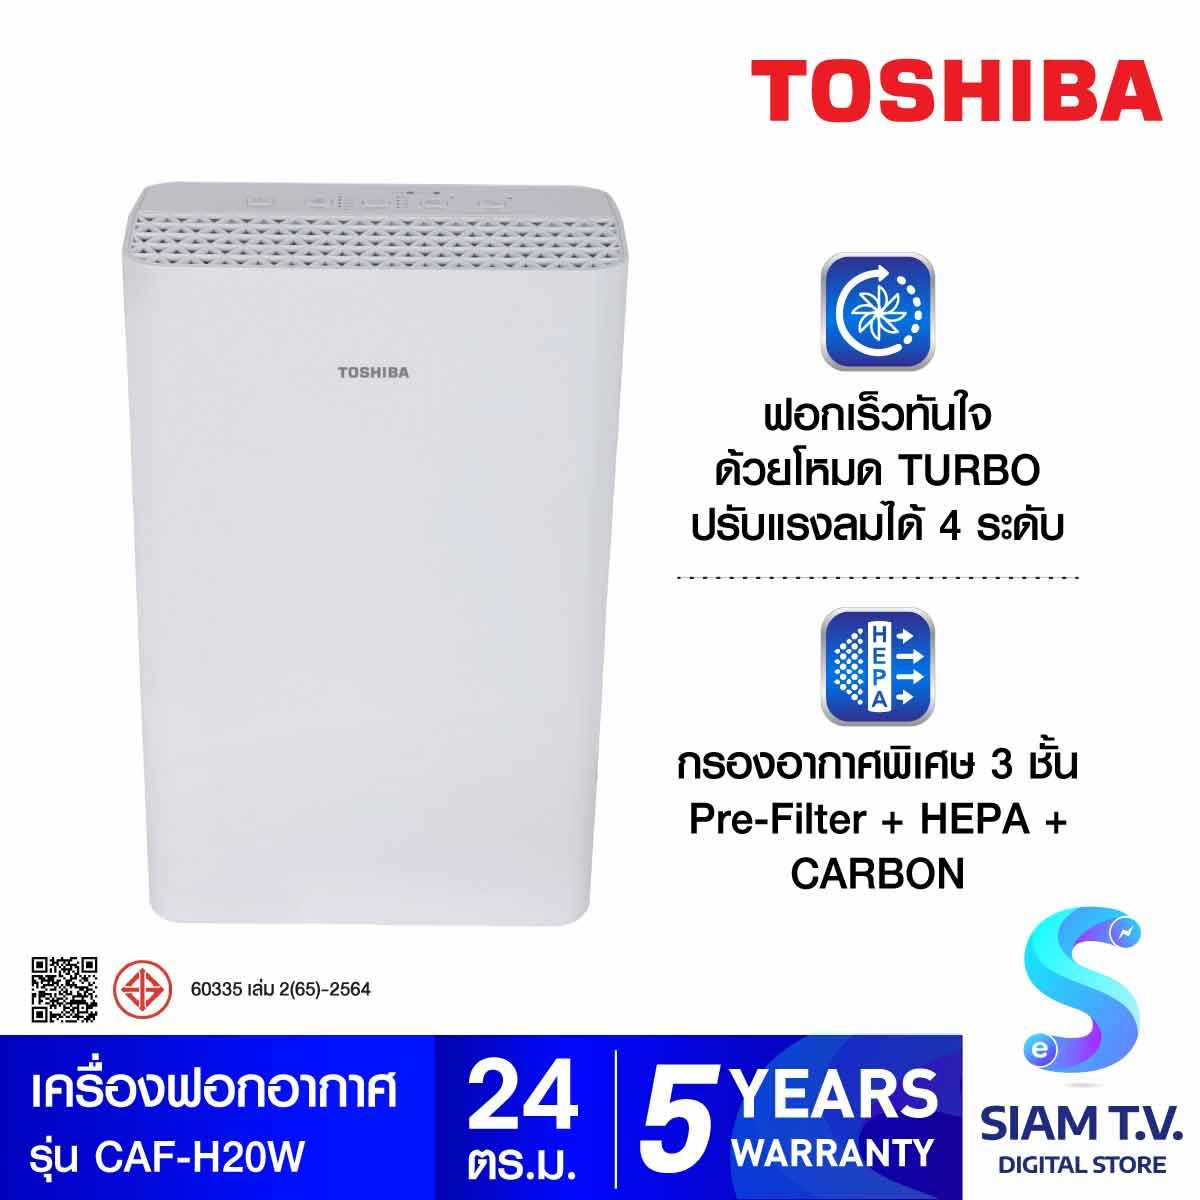 Toshiba เครื่องฟอกอากาศ PM2.5 24ตรม.รุ่น CAF-H20(W)